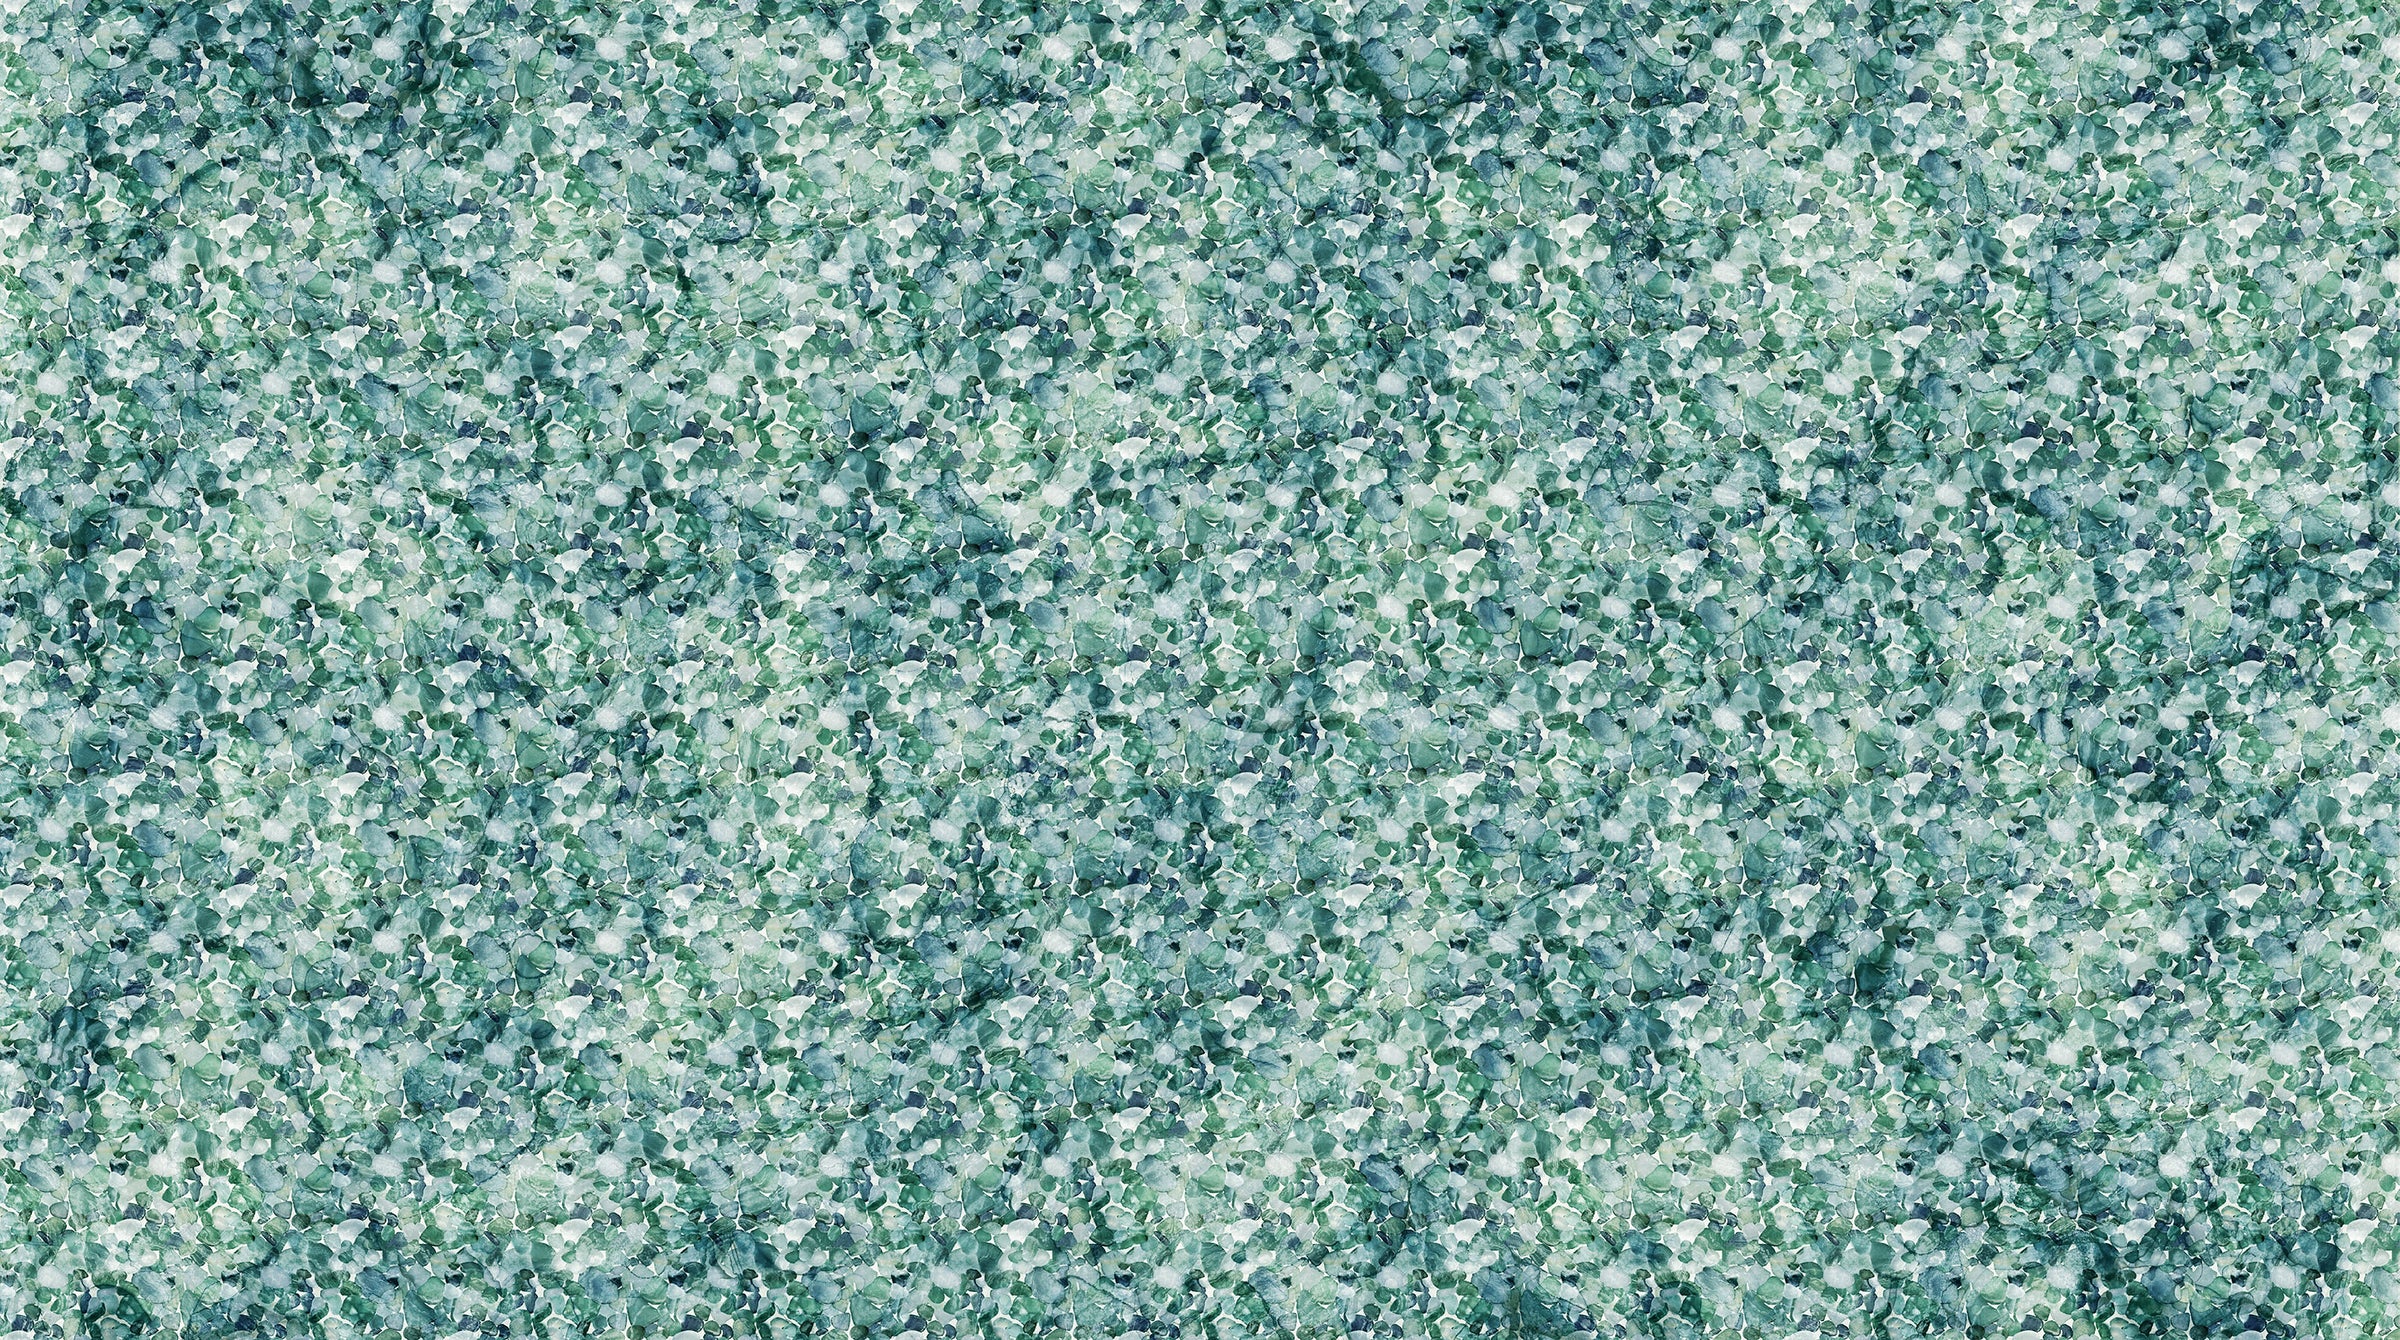 Sea Breeze Quilt Fabric - Seaglass in Seafoam - DP27101-62